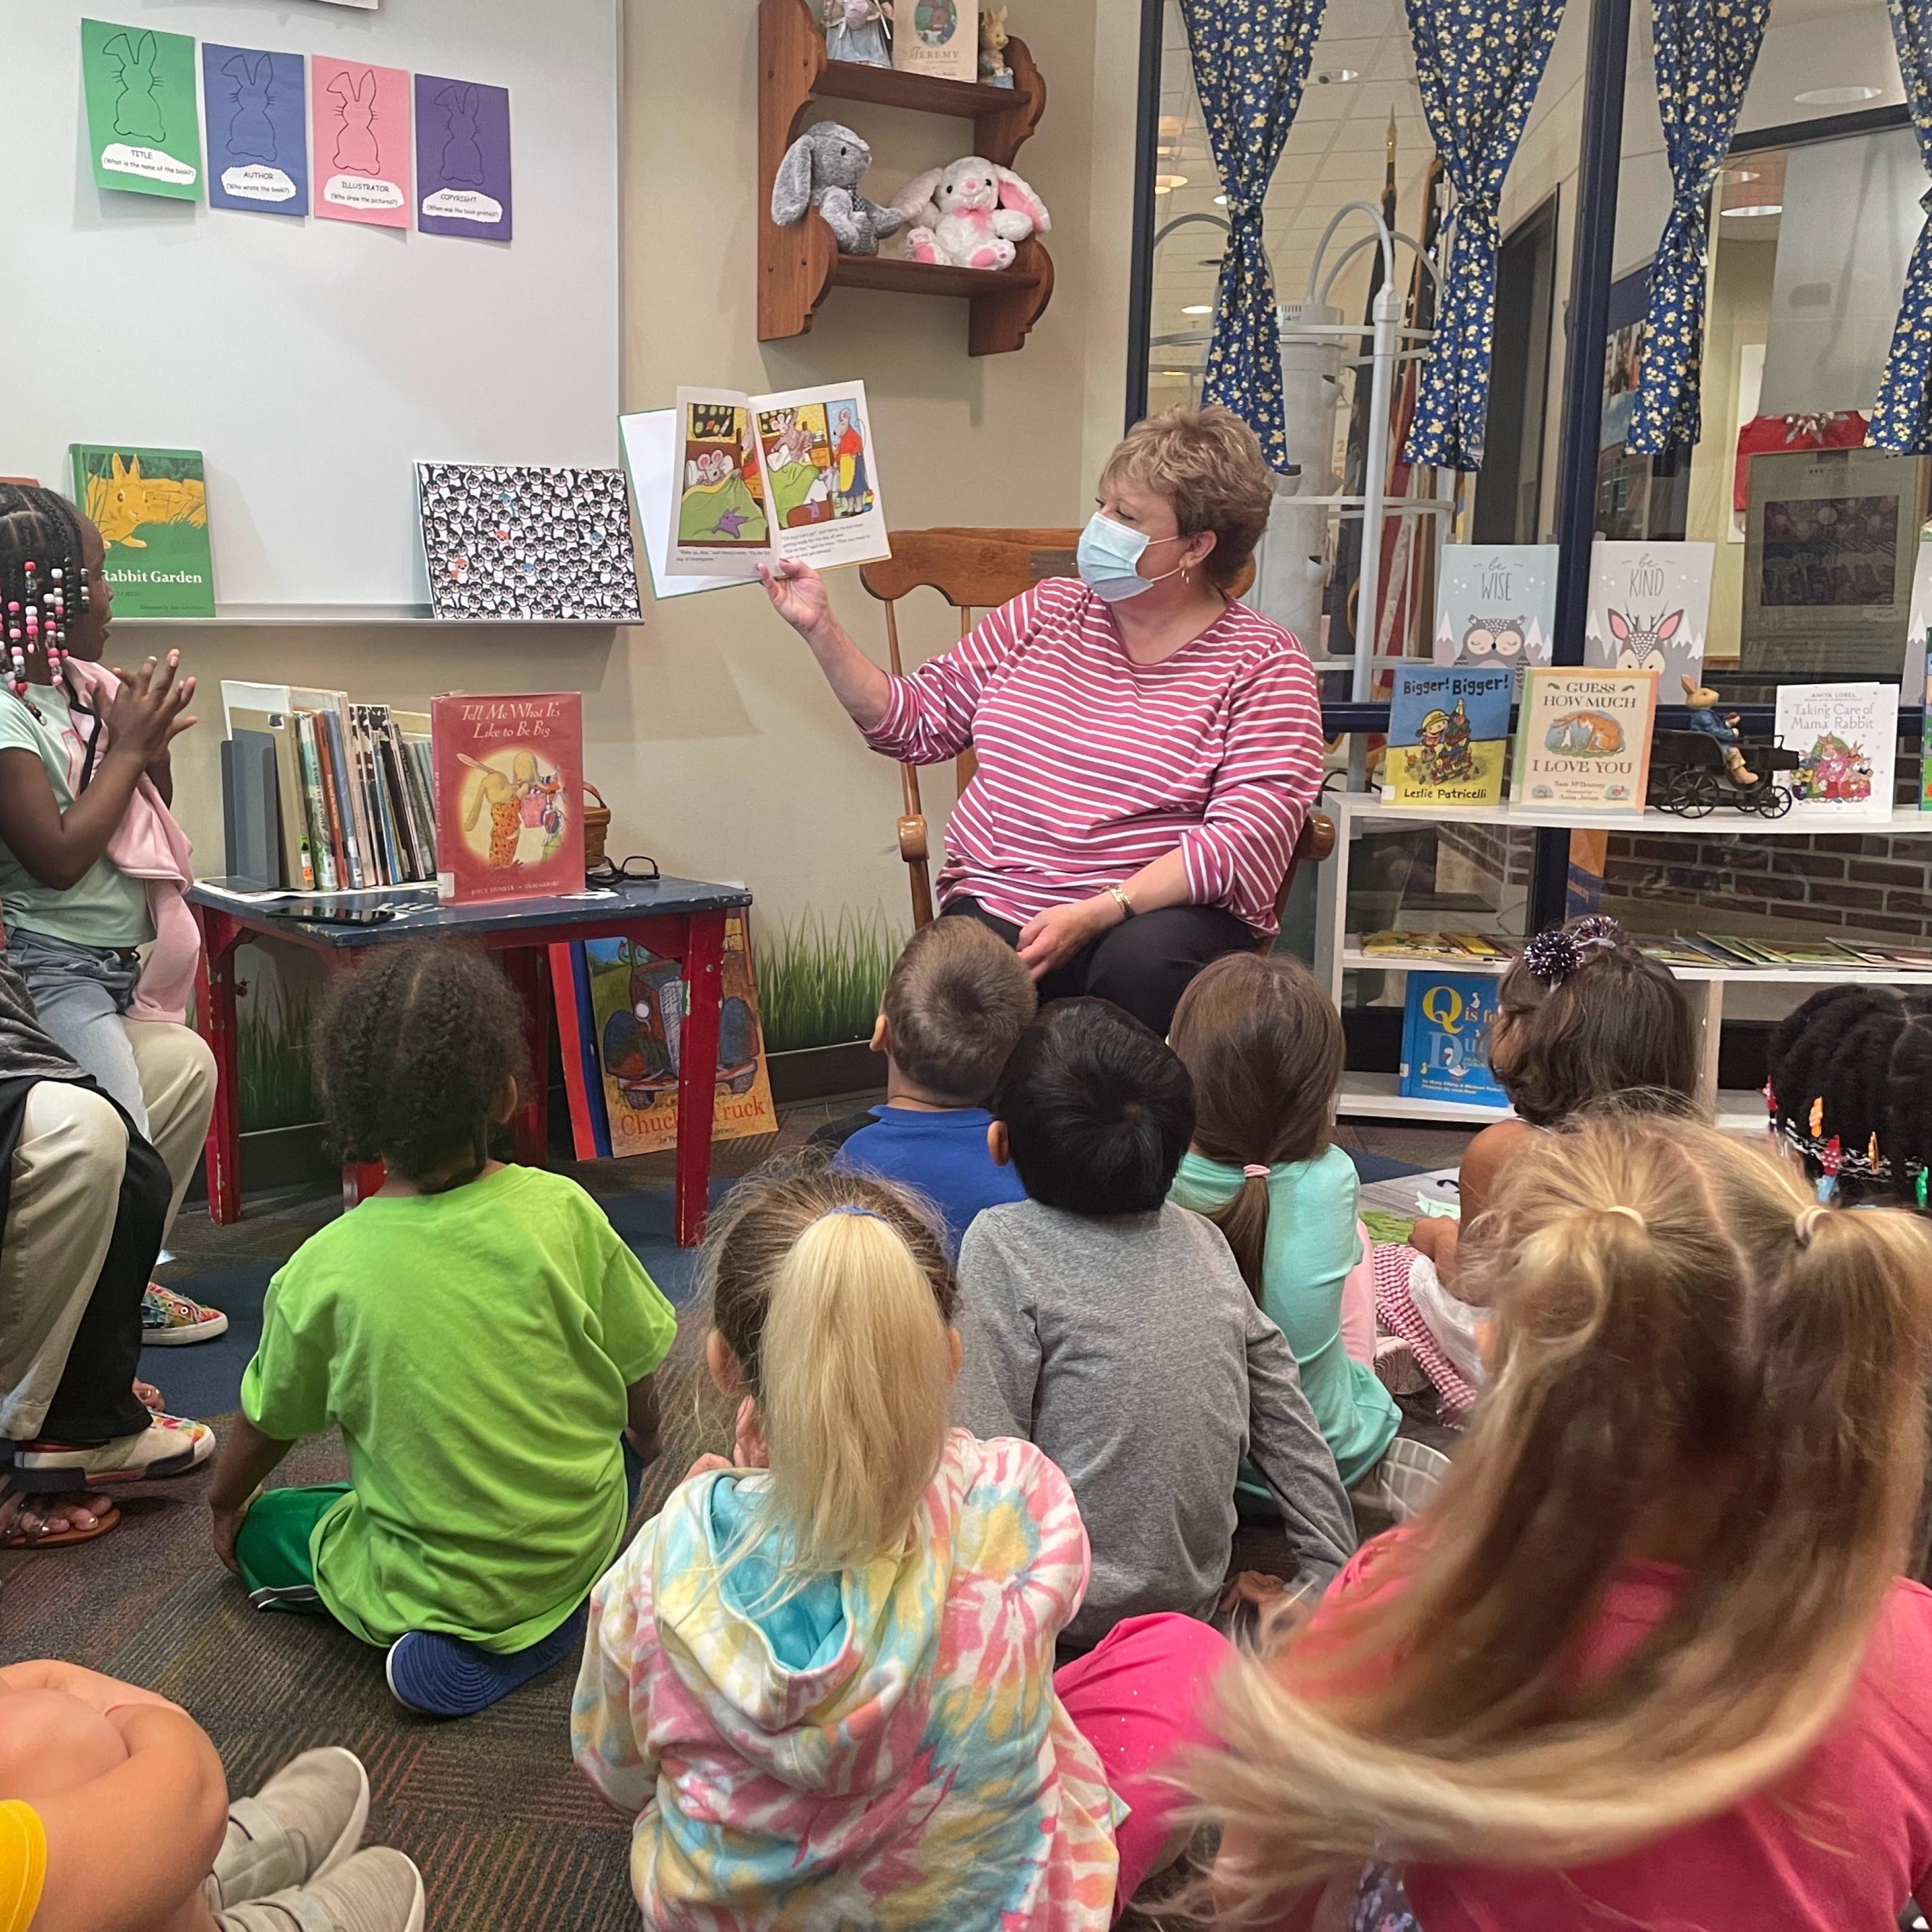 السيدة فورد تقرأ في فصل روضة أطفال السيدة جيلديا في منطقة جحر الأرنب بالمكتبة.